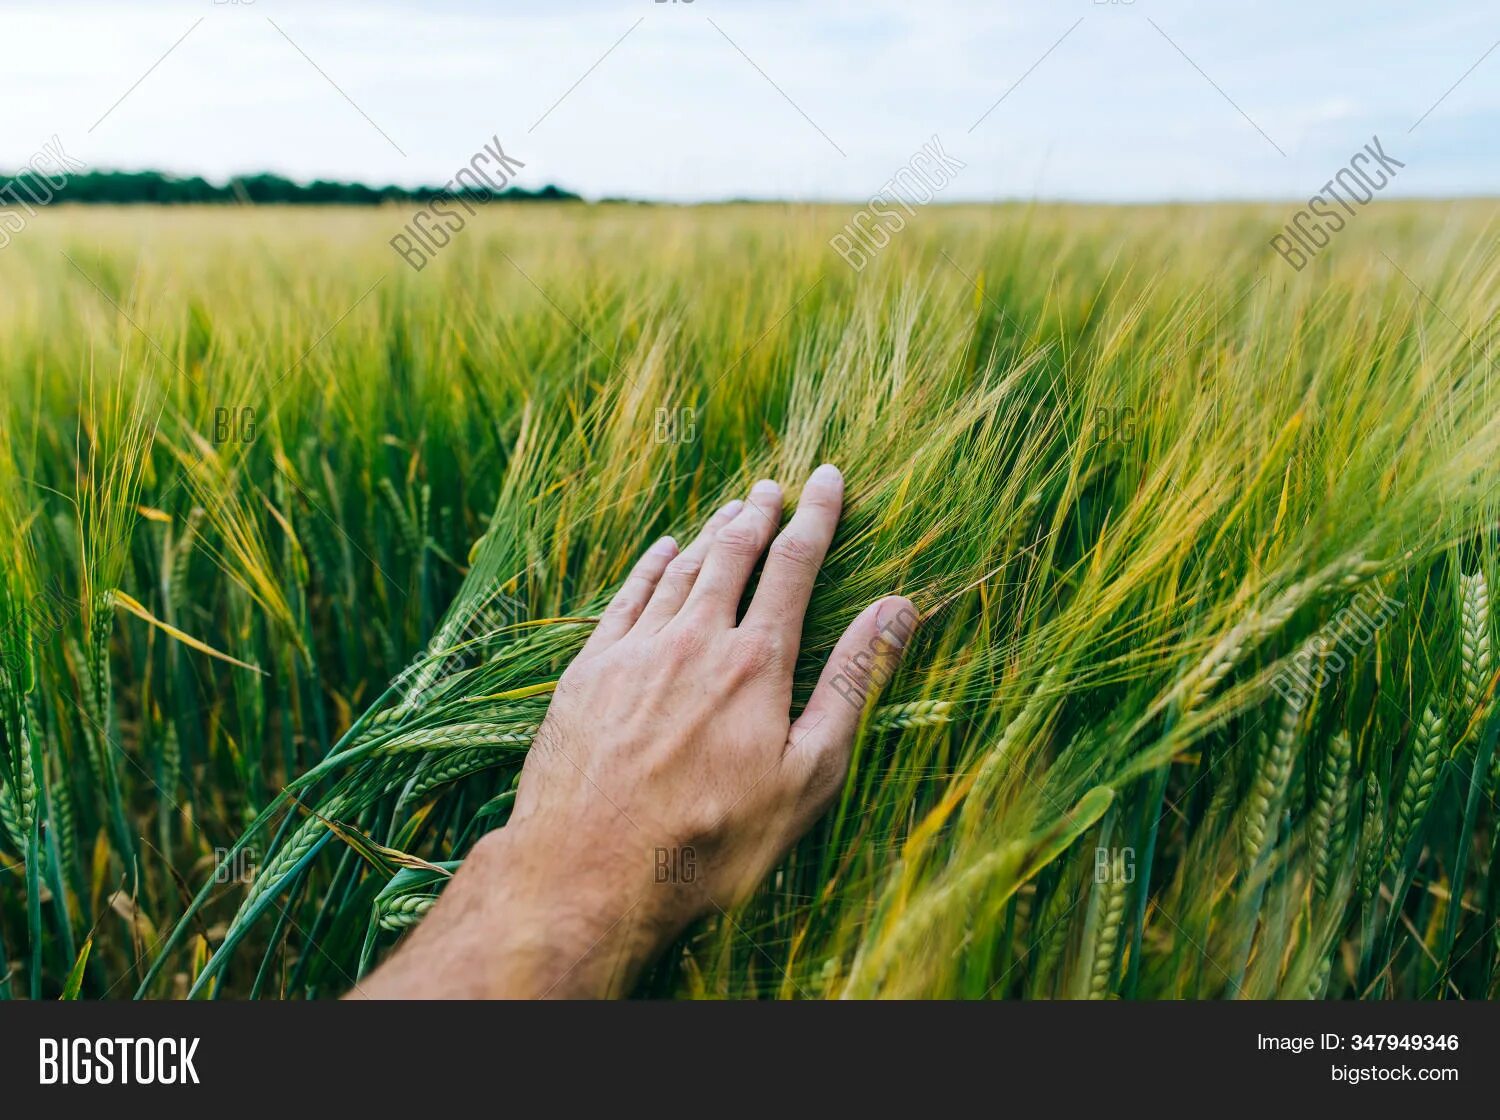 Трава второго укоса. Фермер в поле зеленой пшеницы. Колосья в руках. Зеленая пшеница в руке. Фермер с пшеницей в руках.